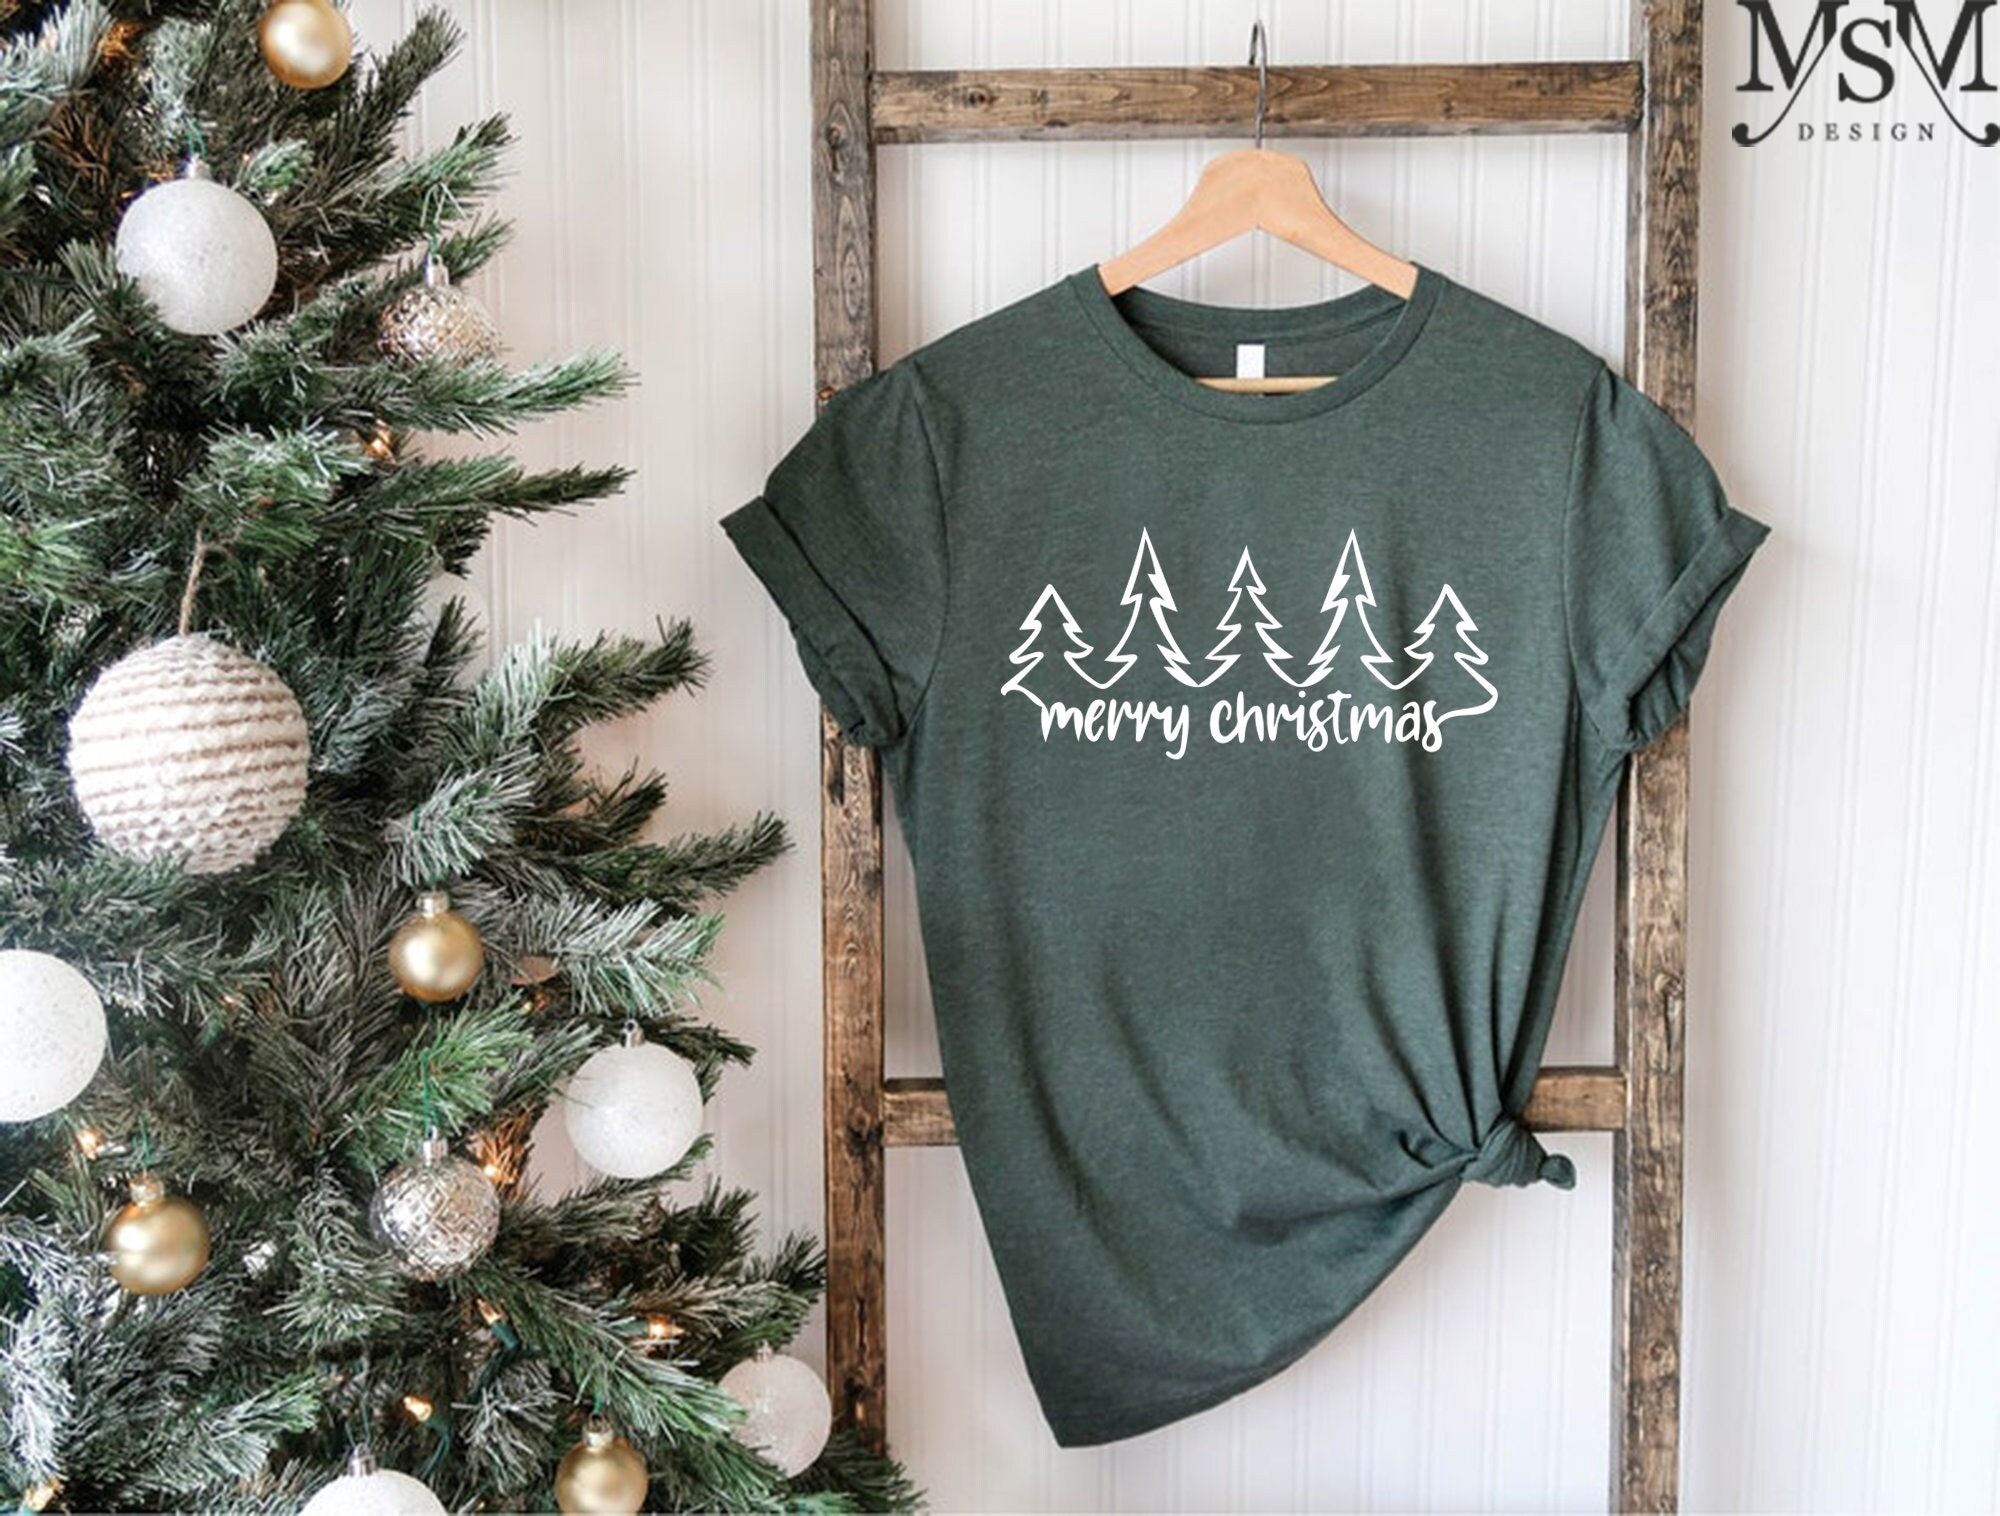 Limited Editon Christmas Trees Shirt Christmas Shirts For Women Christmas Tee Christmas Tshirt Shirts For Christmas Cute Merry Christmas Shirts 